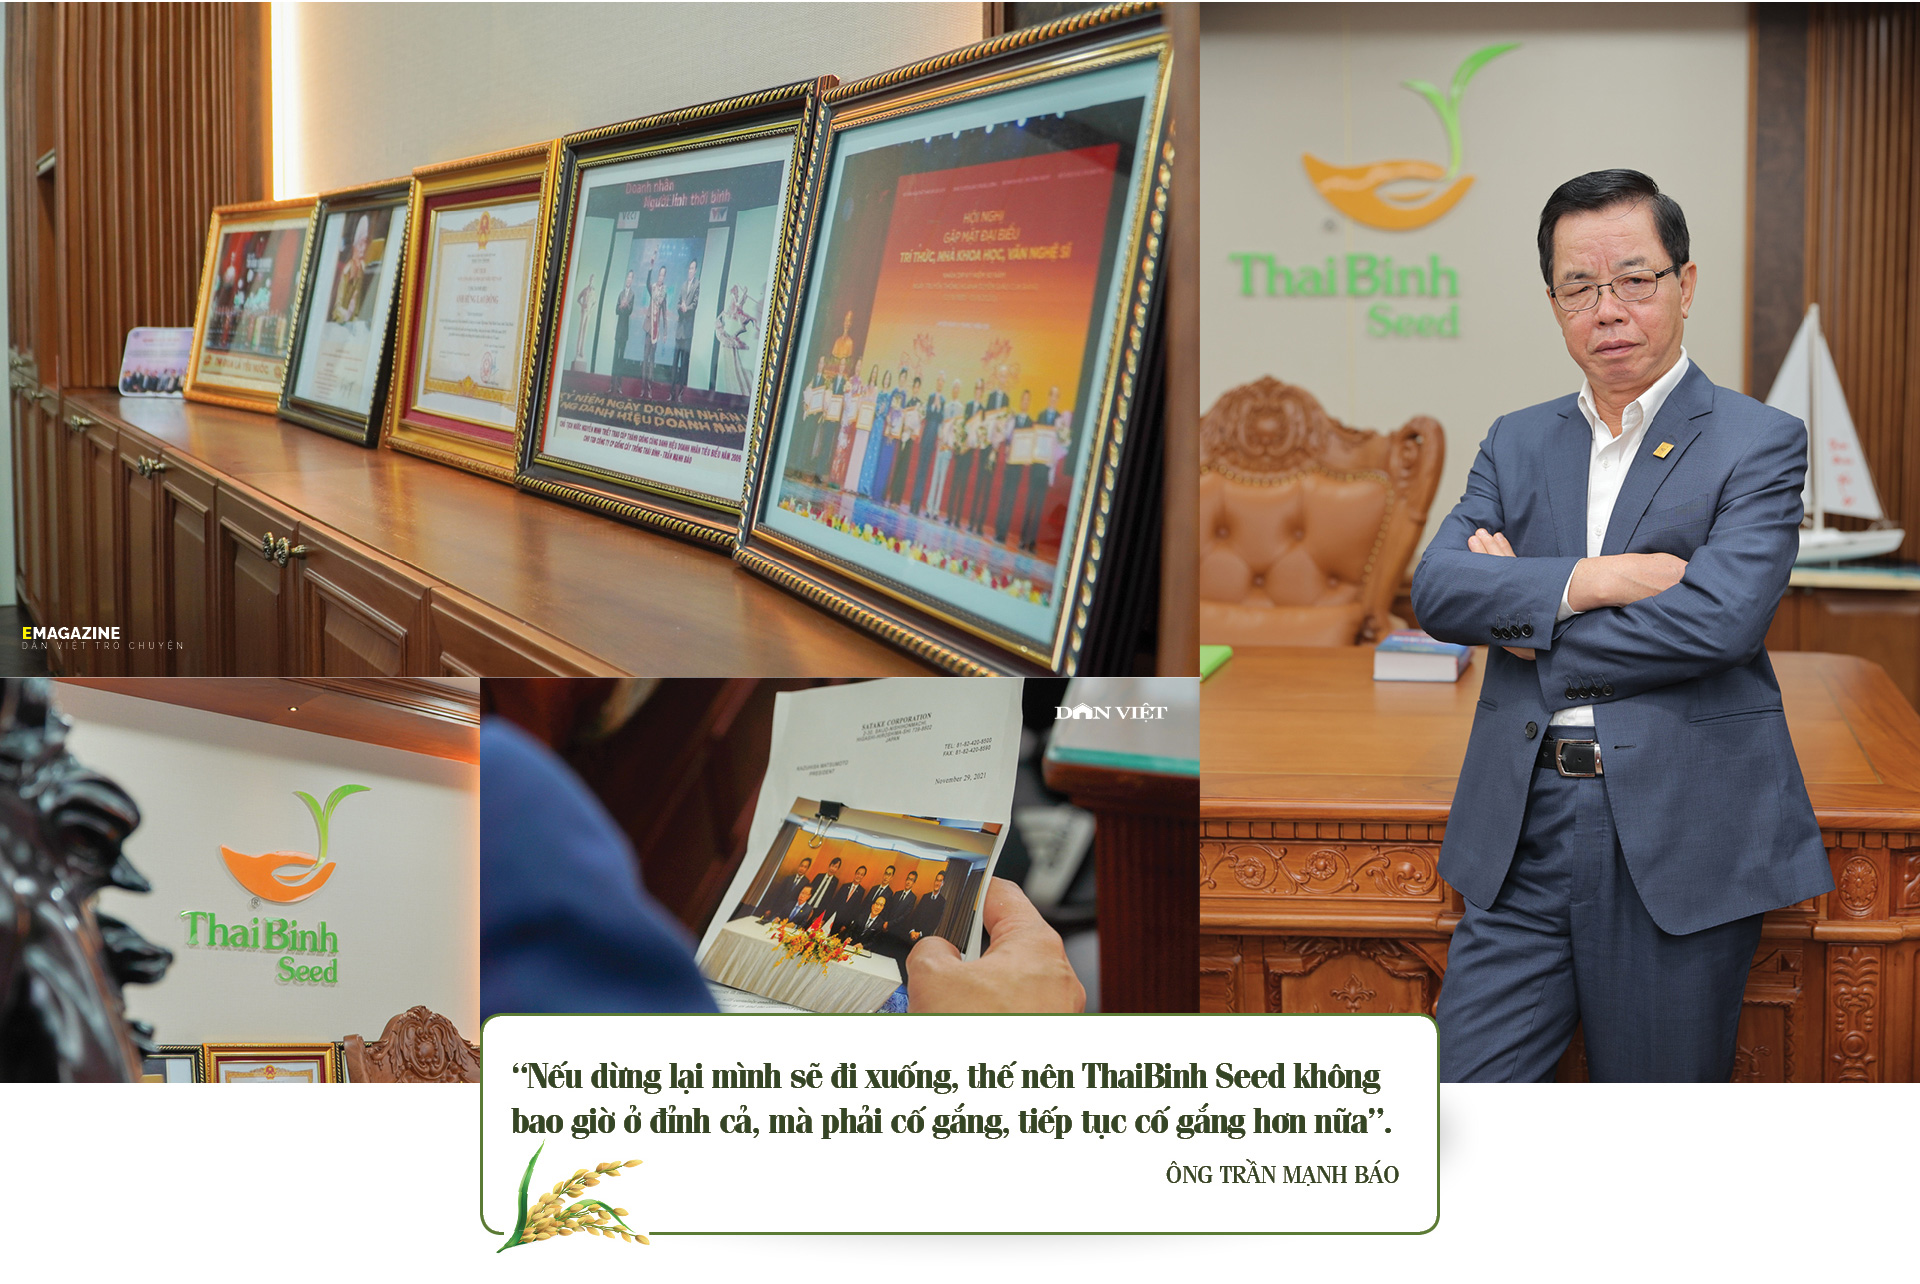 Anh hùng Lao động- CEO của ThaiBinh Seed Trần Mạnh Báo: Viết tiếp hành trình Người nông dân mới  - Ảnh 16.